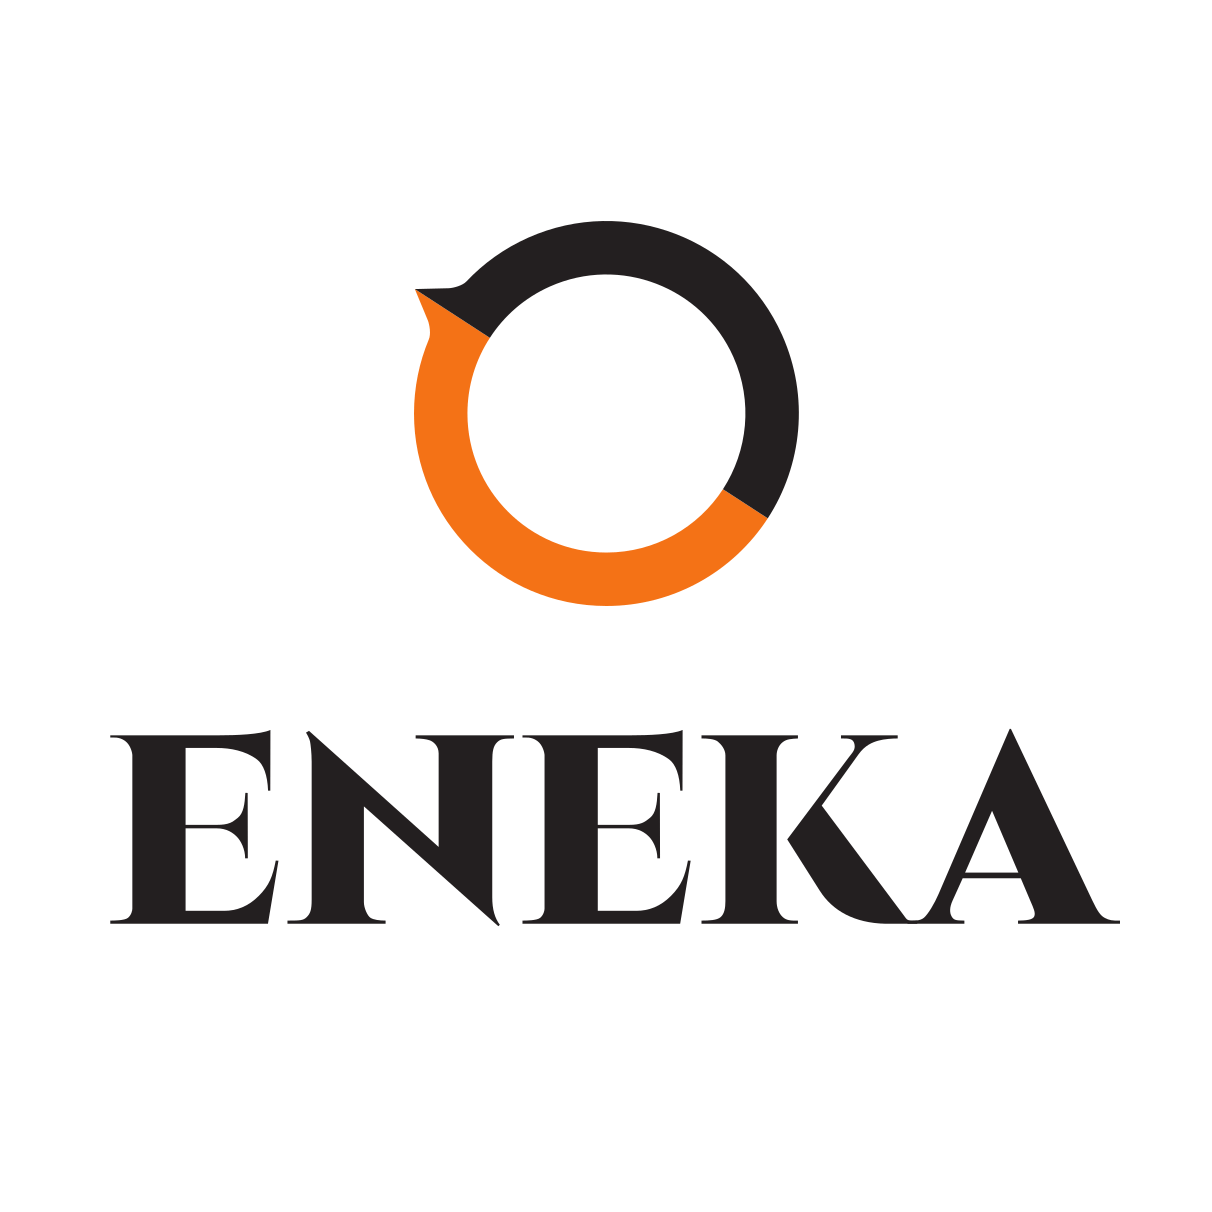 Eneka